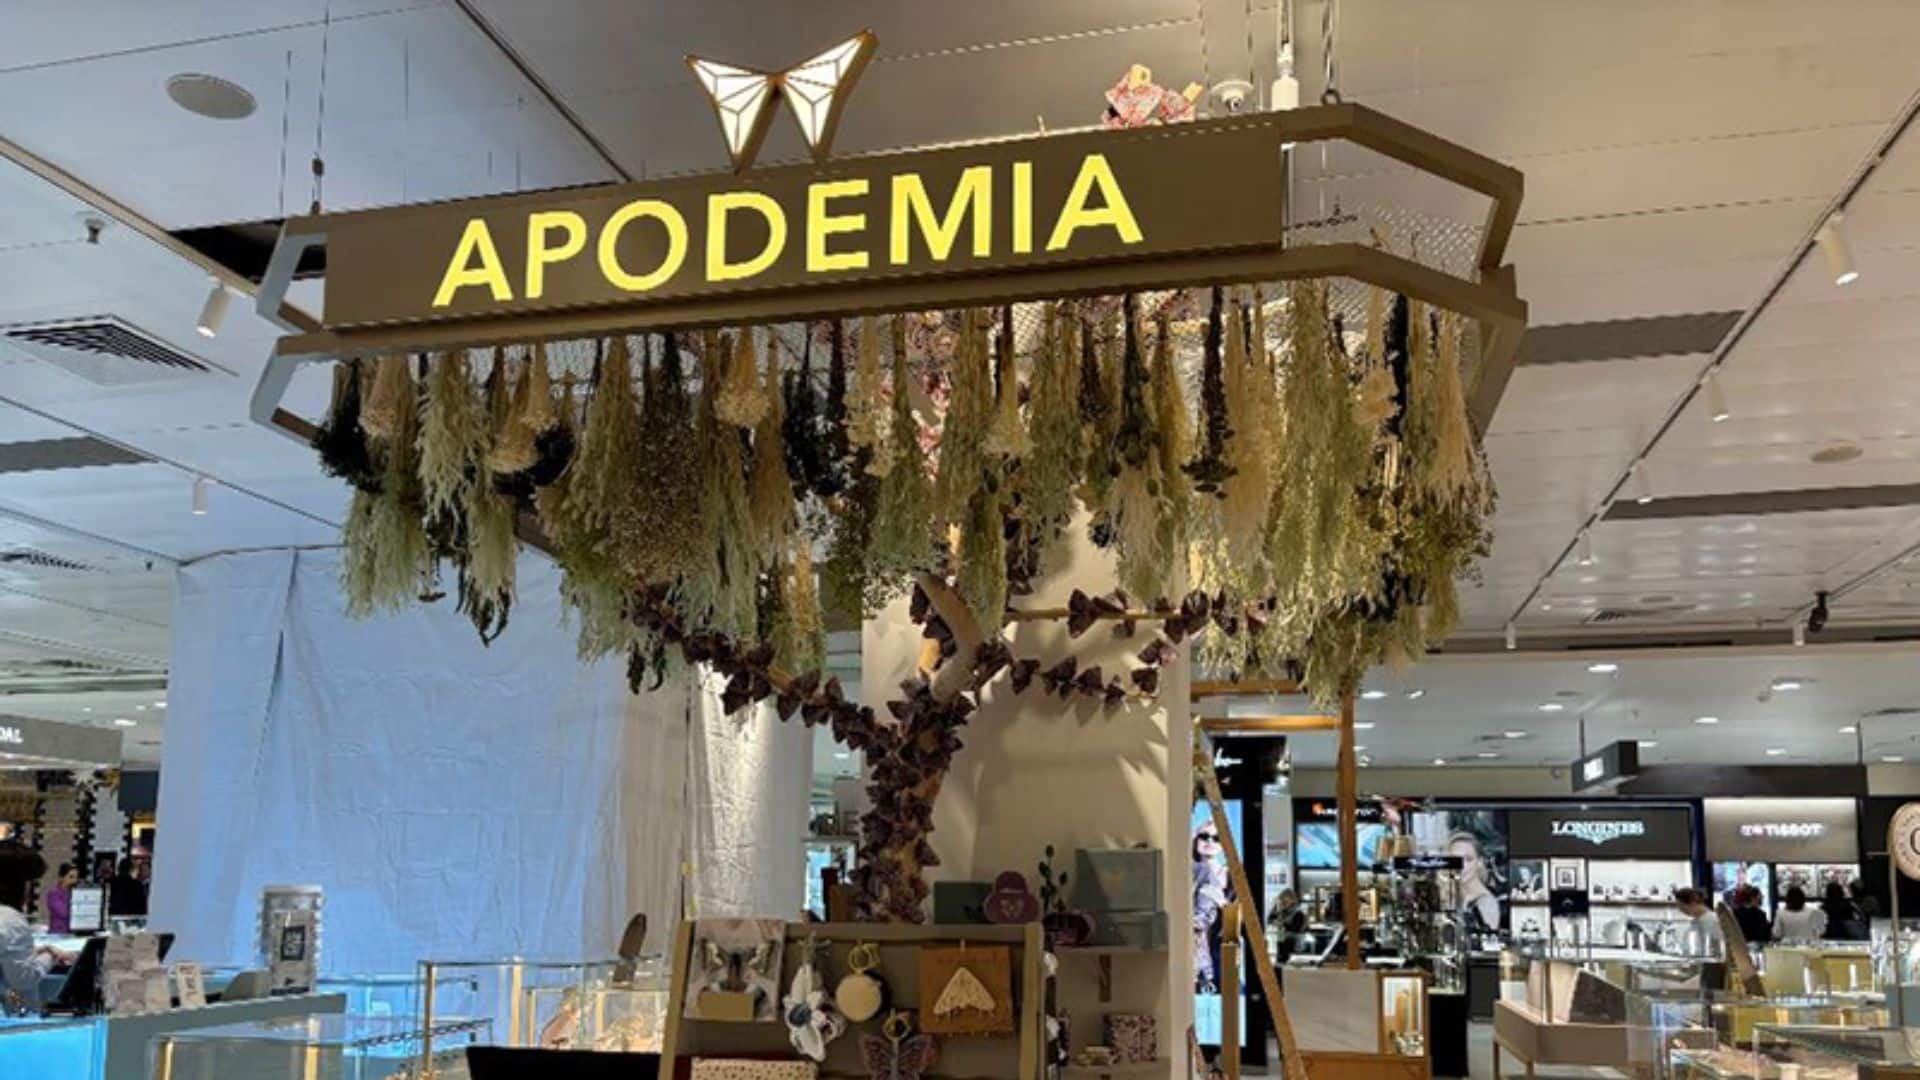 La firma de joyería y lifestyle Apodemia crece en España y abre un nuevo espacio en El Corte Inglés de Pozuelo